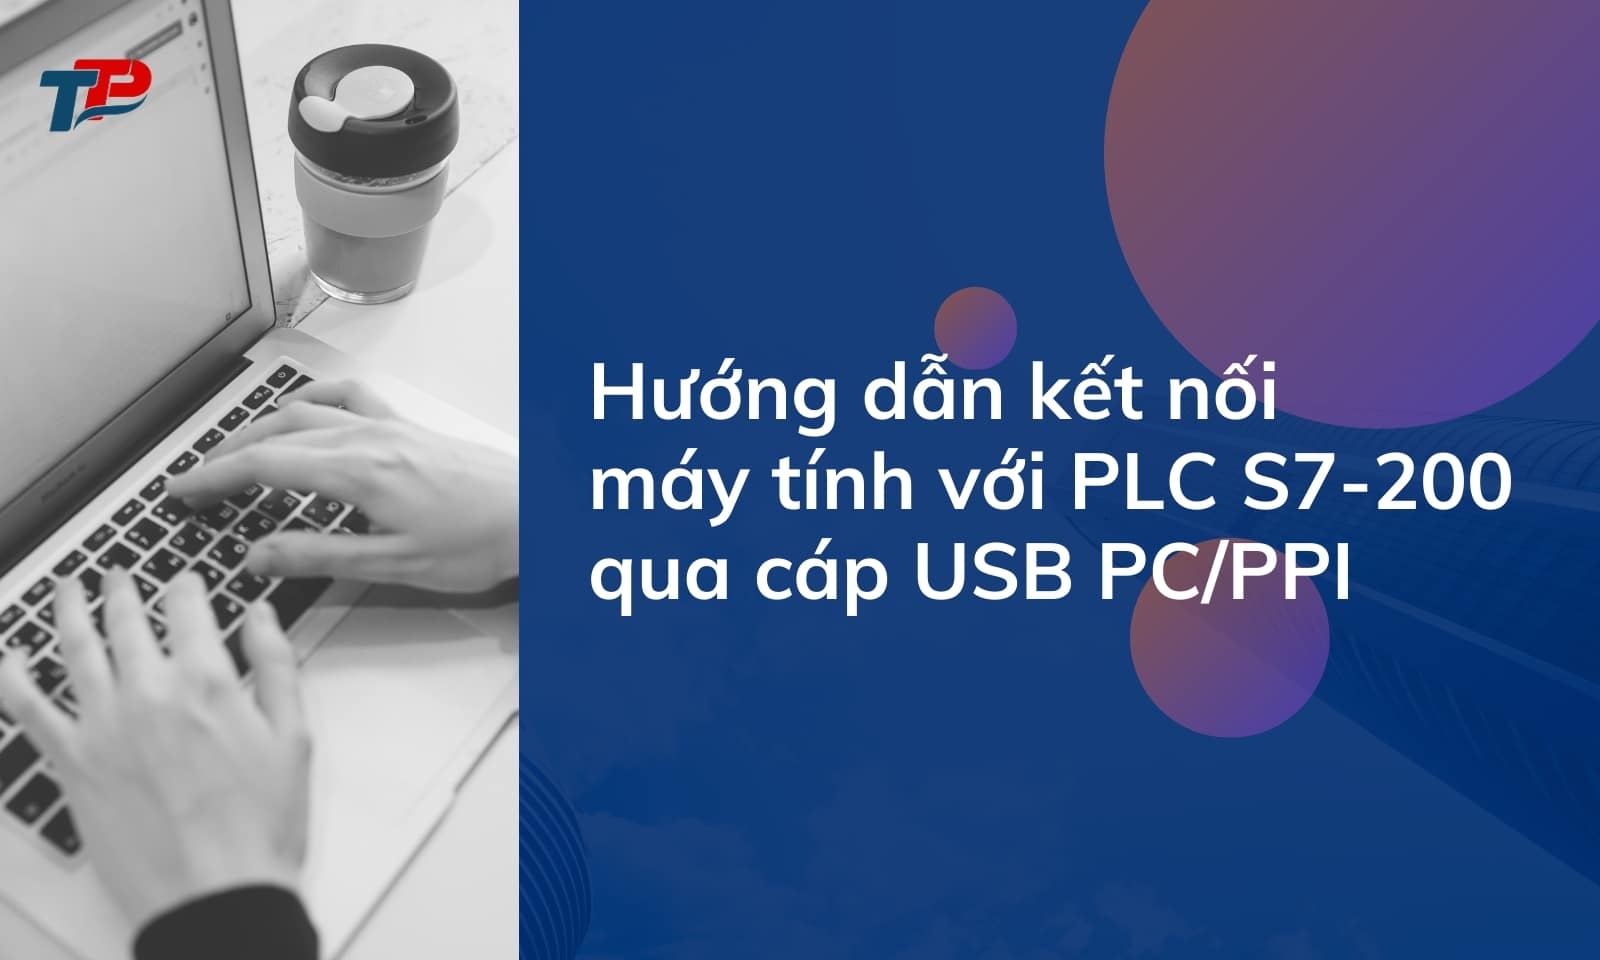 Hướng dẫn kết nối máy tính với PLC S7-200 qua cáp USB PC/PPI